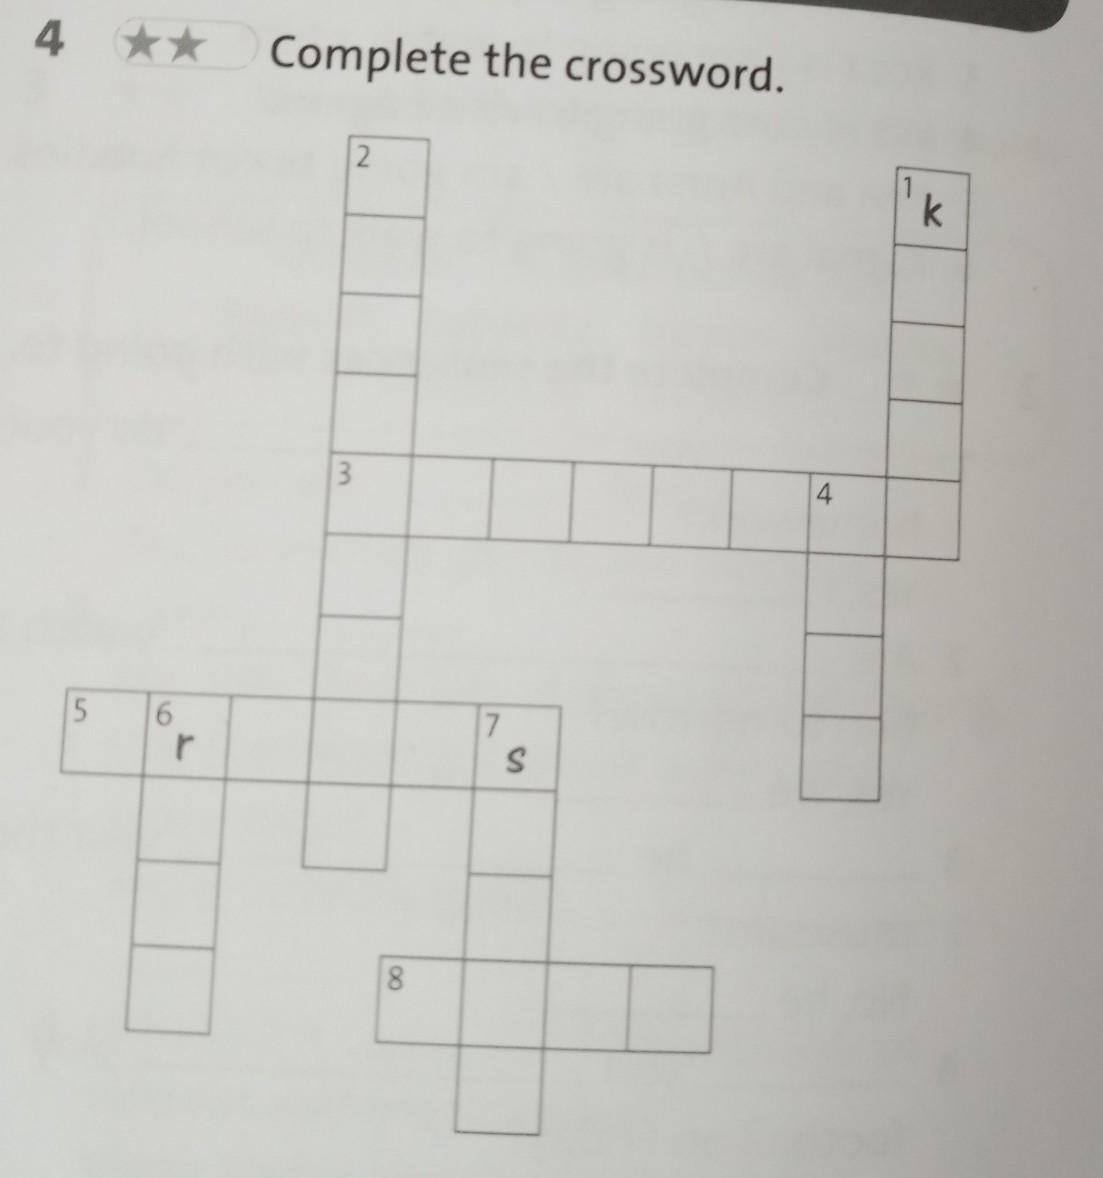 1 Complete the crossword. Complete the crossword. Down across. Complete the crossword 5 класс down. Complete the crossword one. 1 complete the crossword across